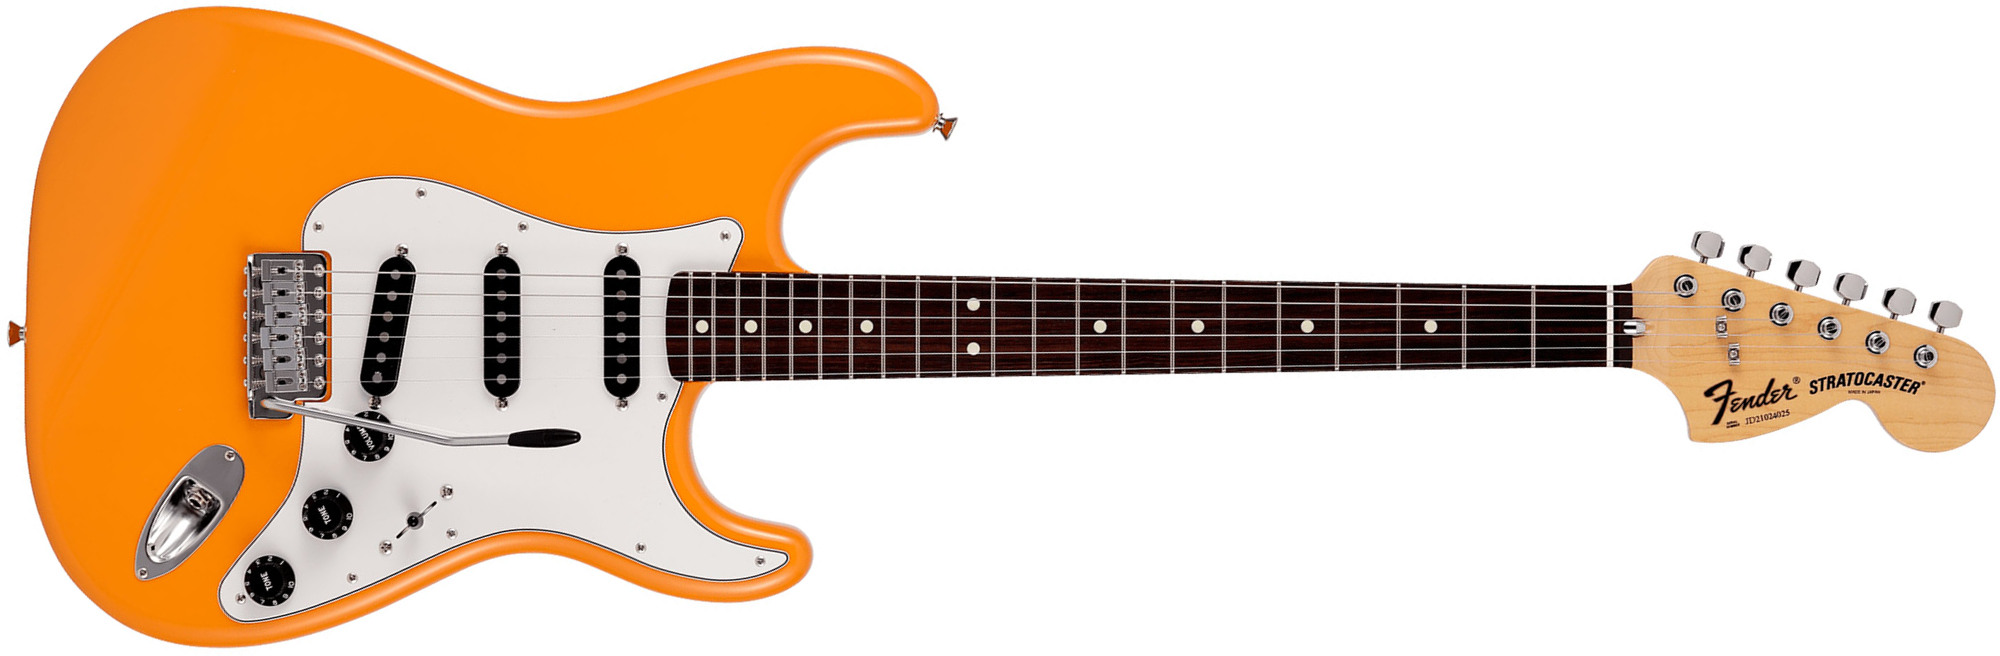 Fender Strat International Color Ltd Jap 3s Trem Rw - Capri Orange - Guitare Électrique Forme Str - Main picture